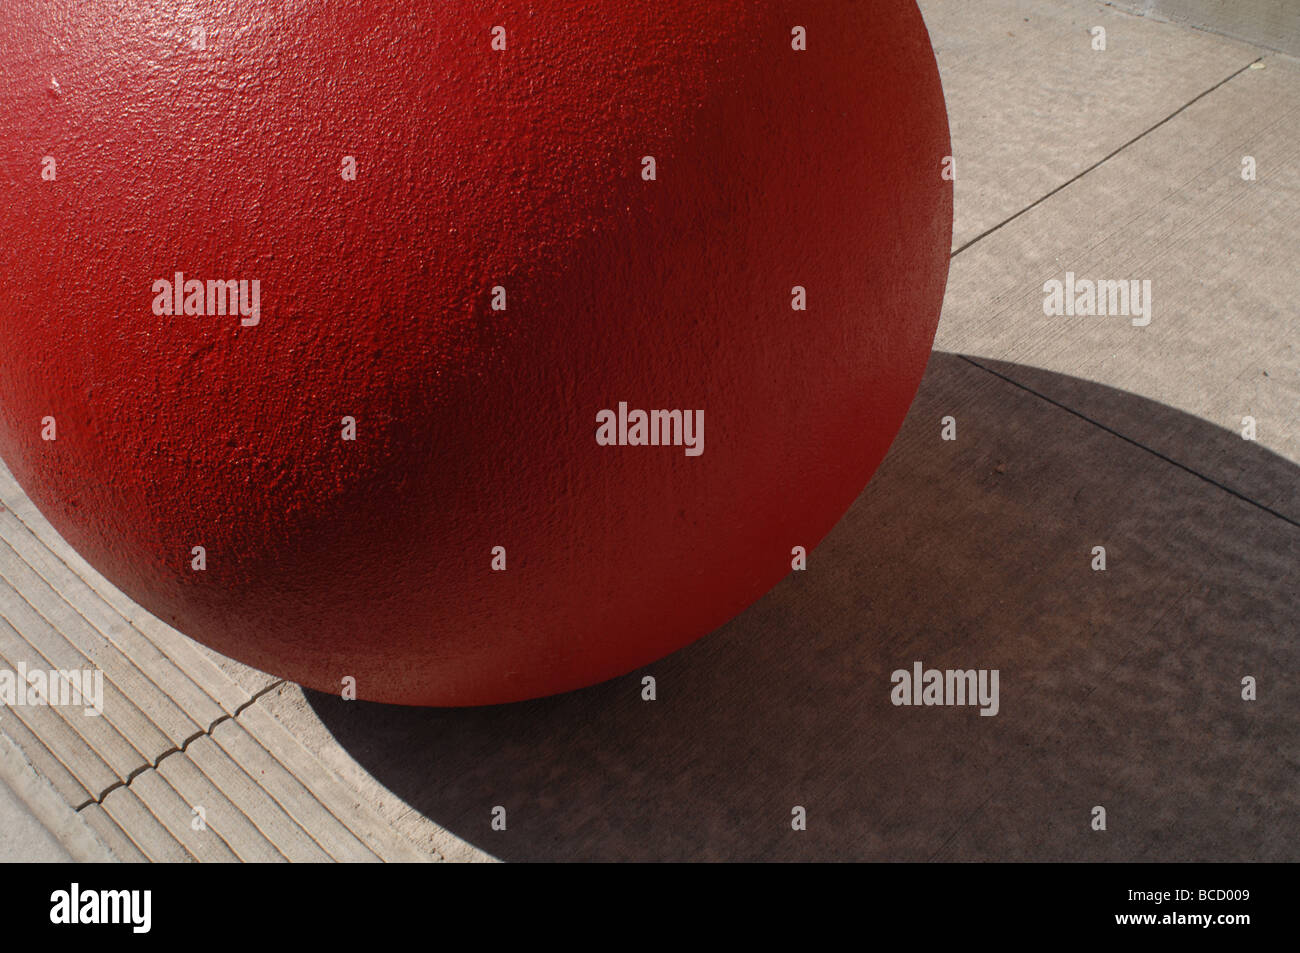 Ciment rouge balle sur le plancher d'une cible, ombre, sub, lignes, rouge Banque D'Images